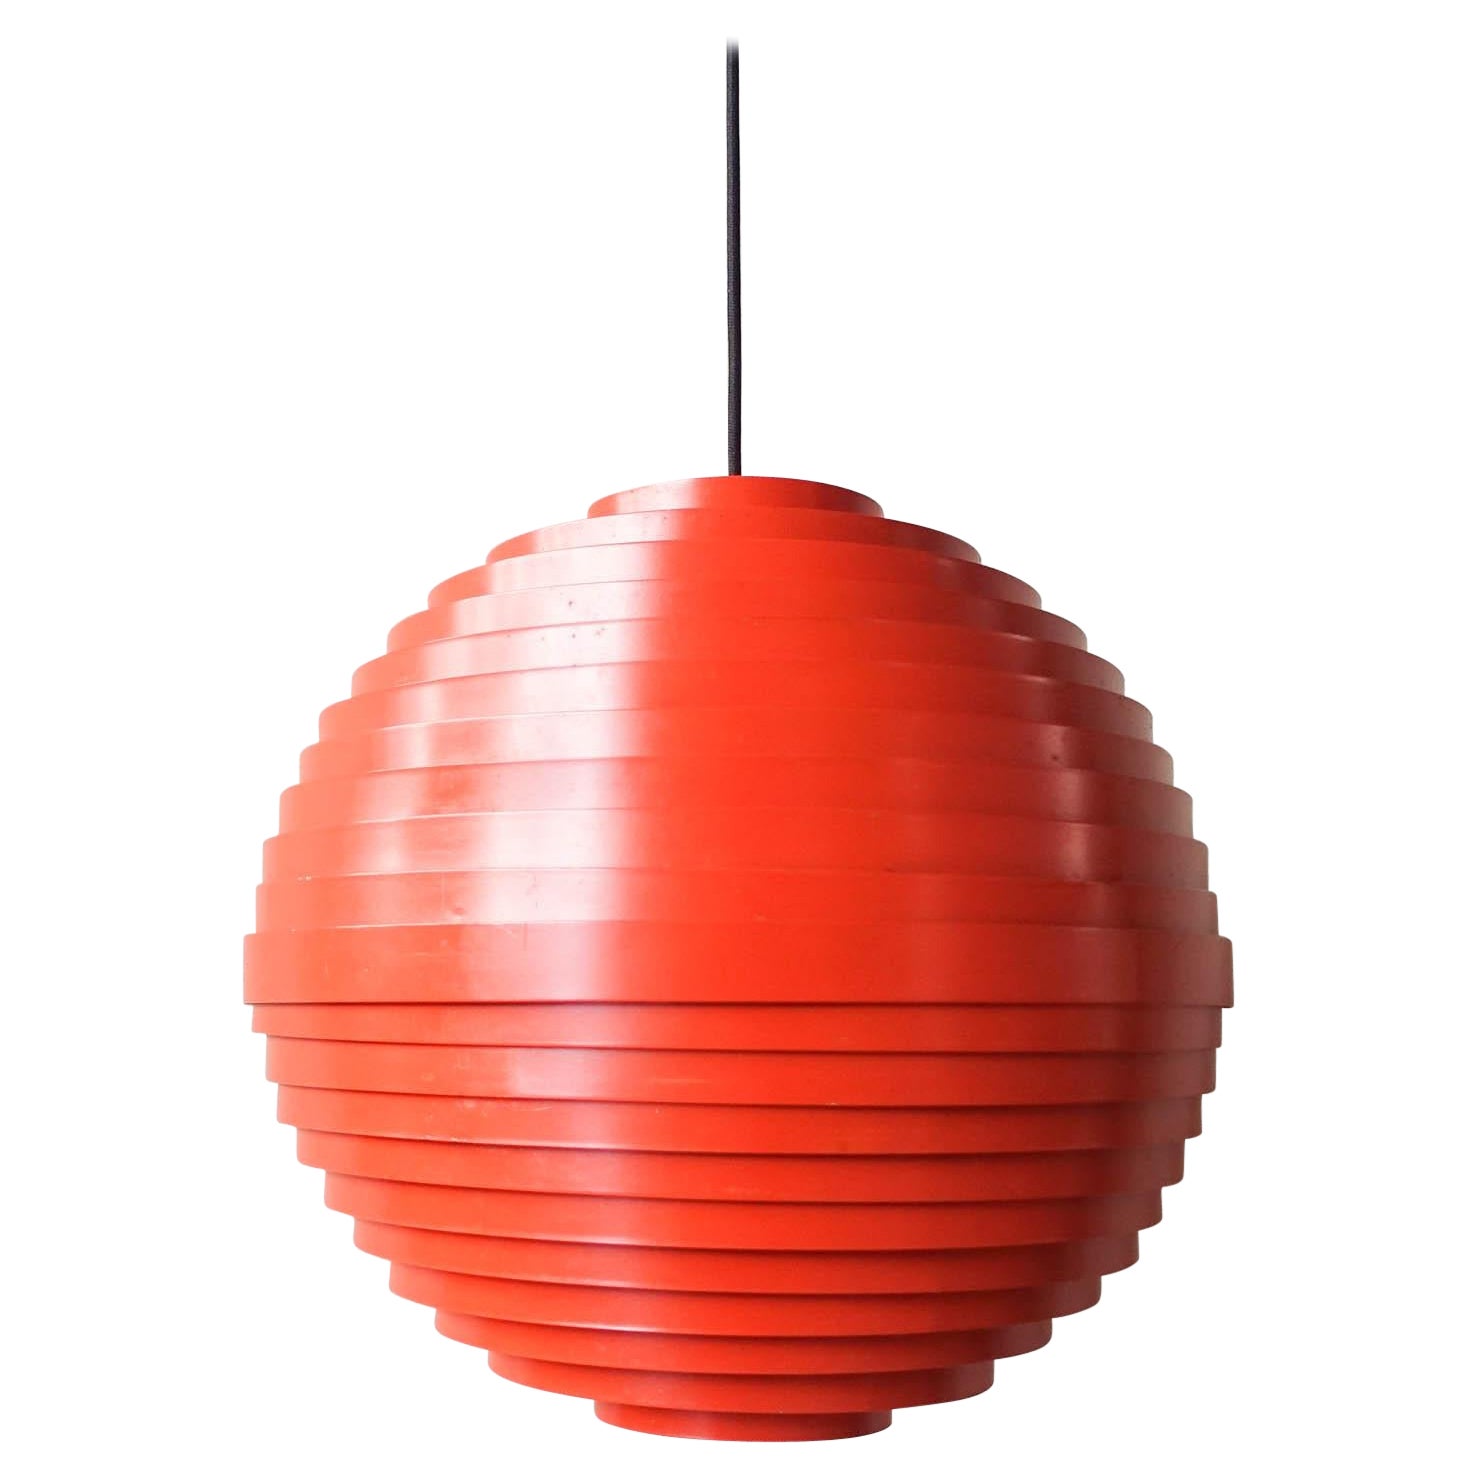 Pendant Lamp, model "Dynamic" by Wilhelm Vest for Vest Leuchten, 1969